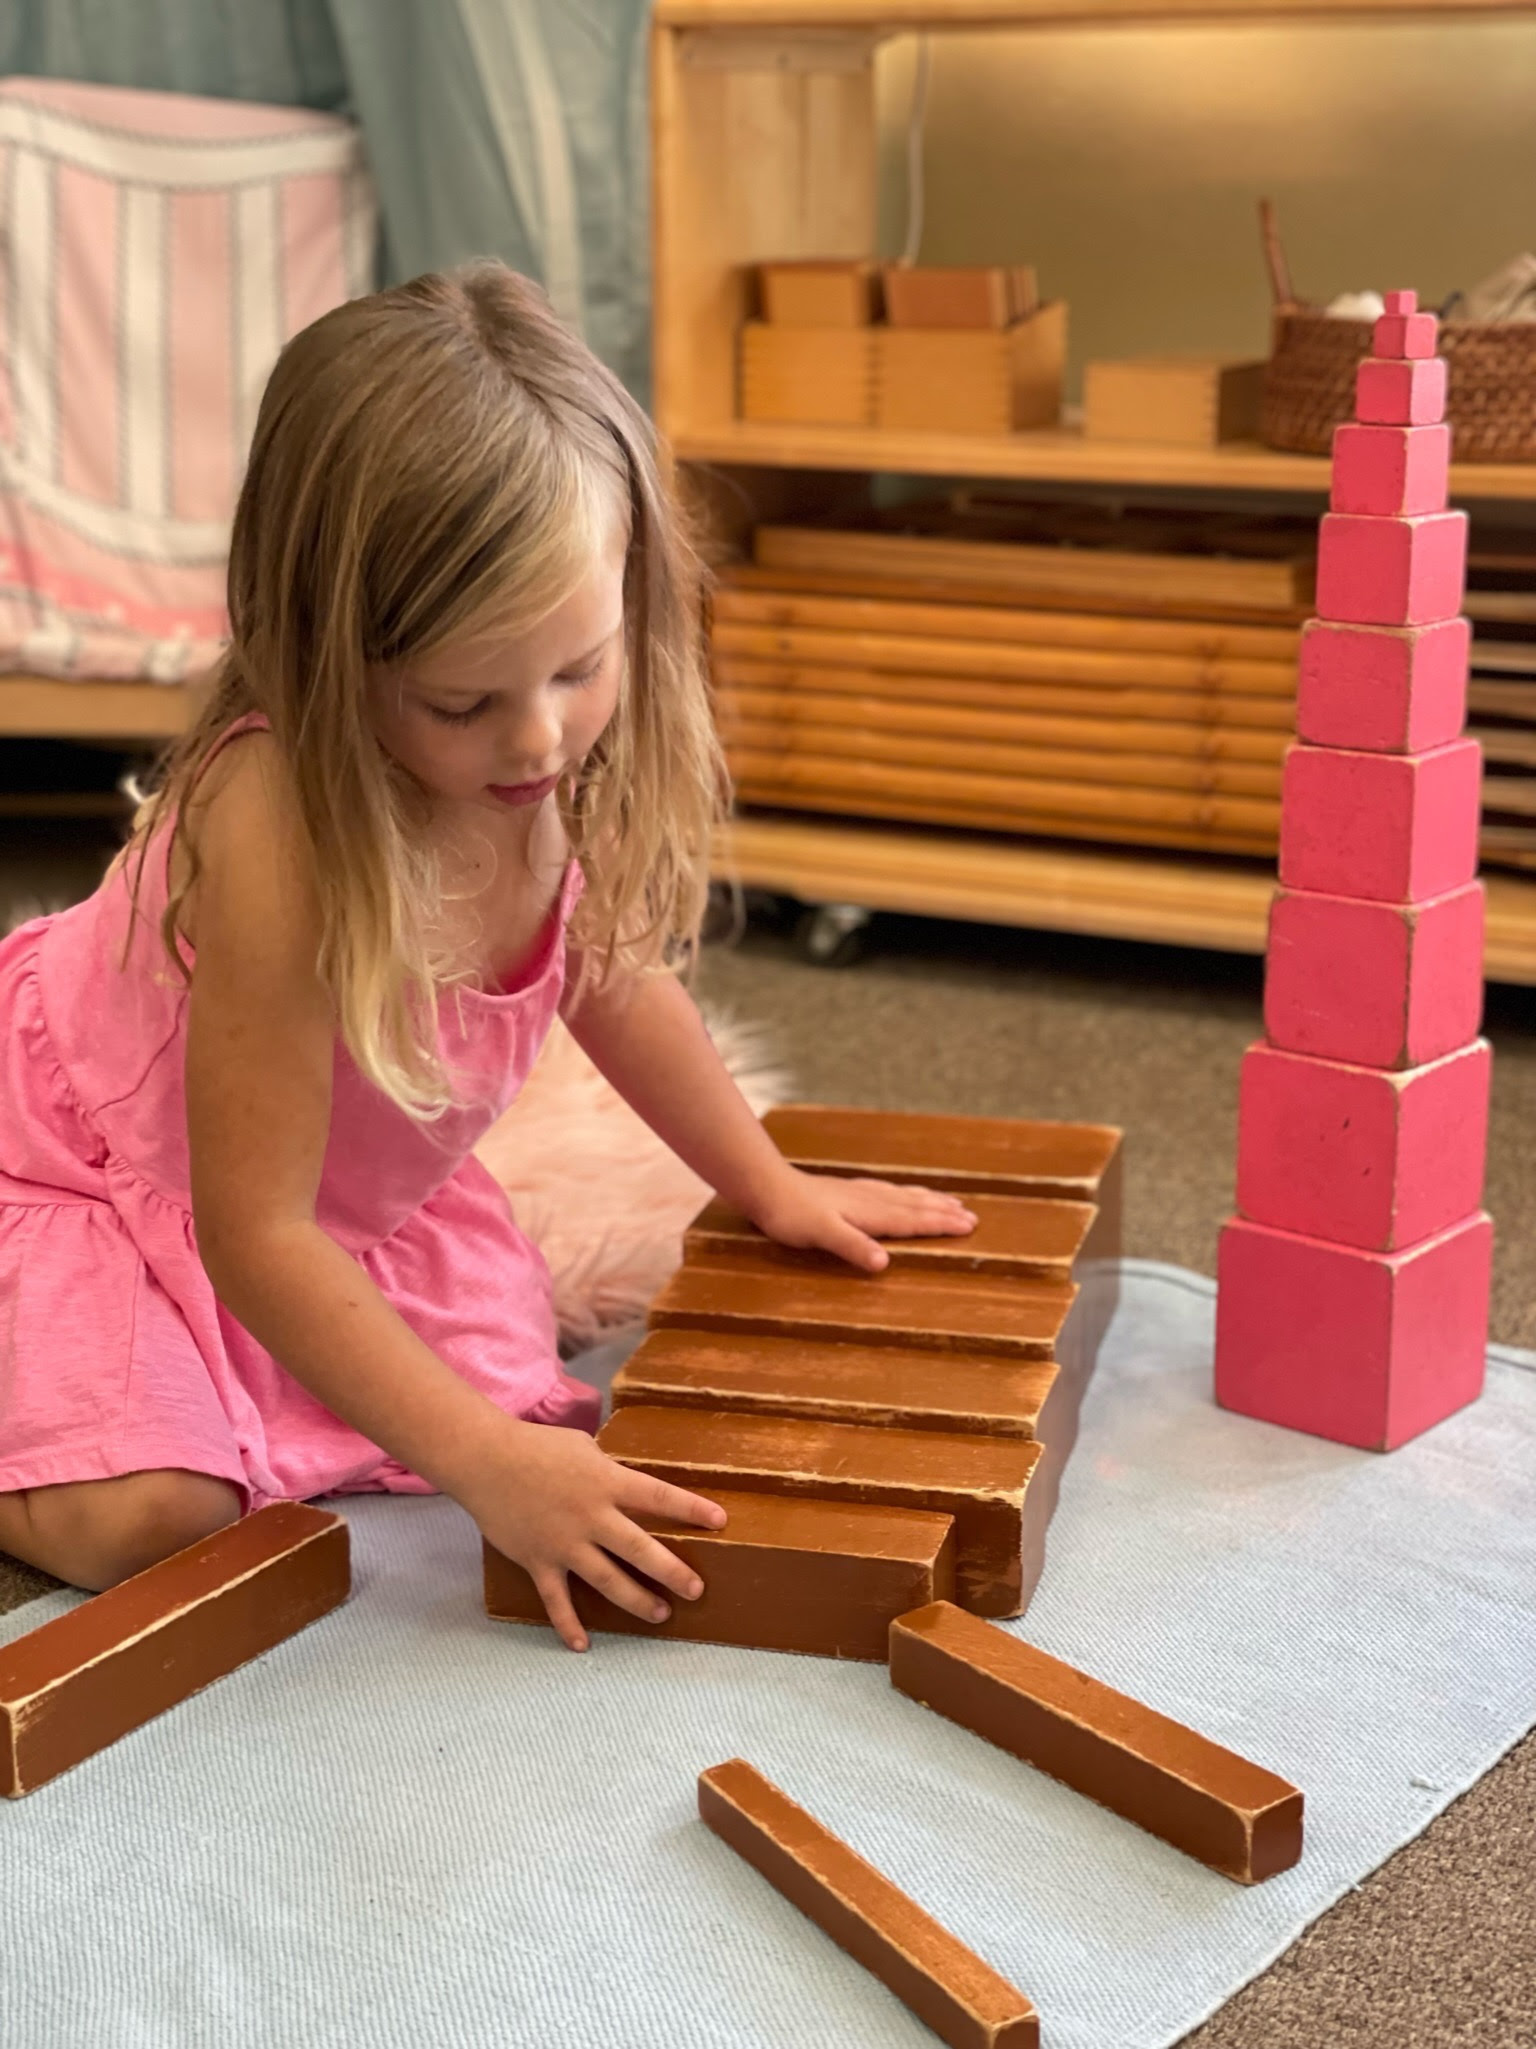 Inside Escuela: Montessori Materials &#8211; The Importance of Movement